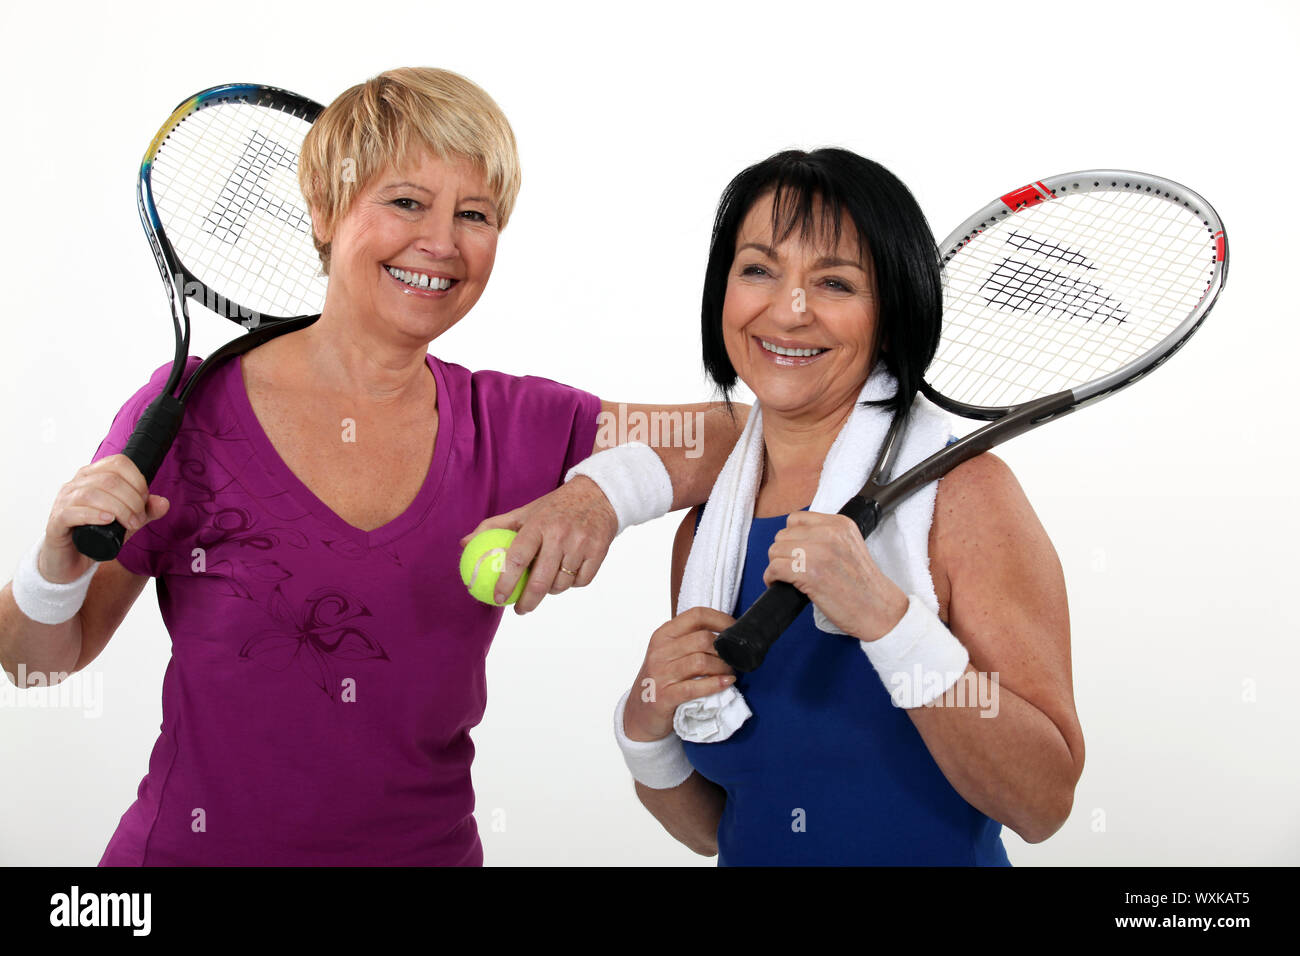 Les amis à jouer au tennis Photo Stock - Alamy